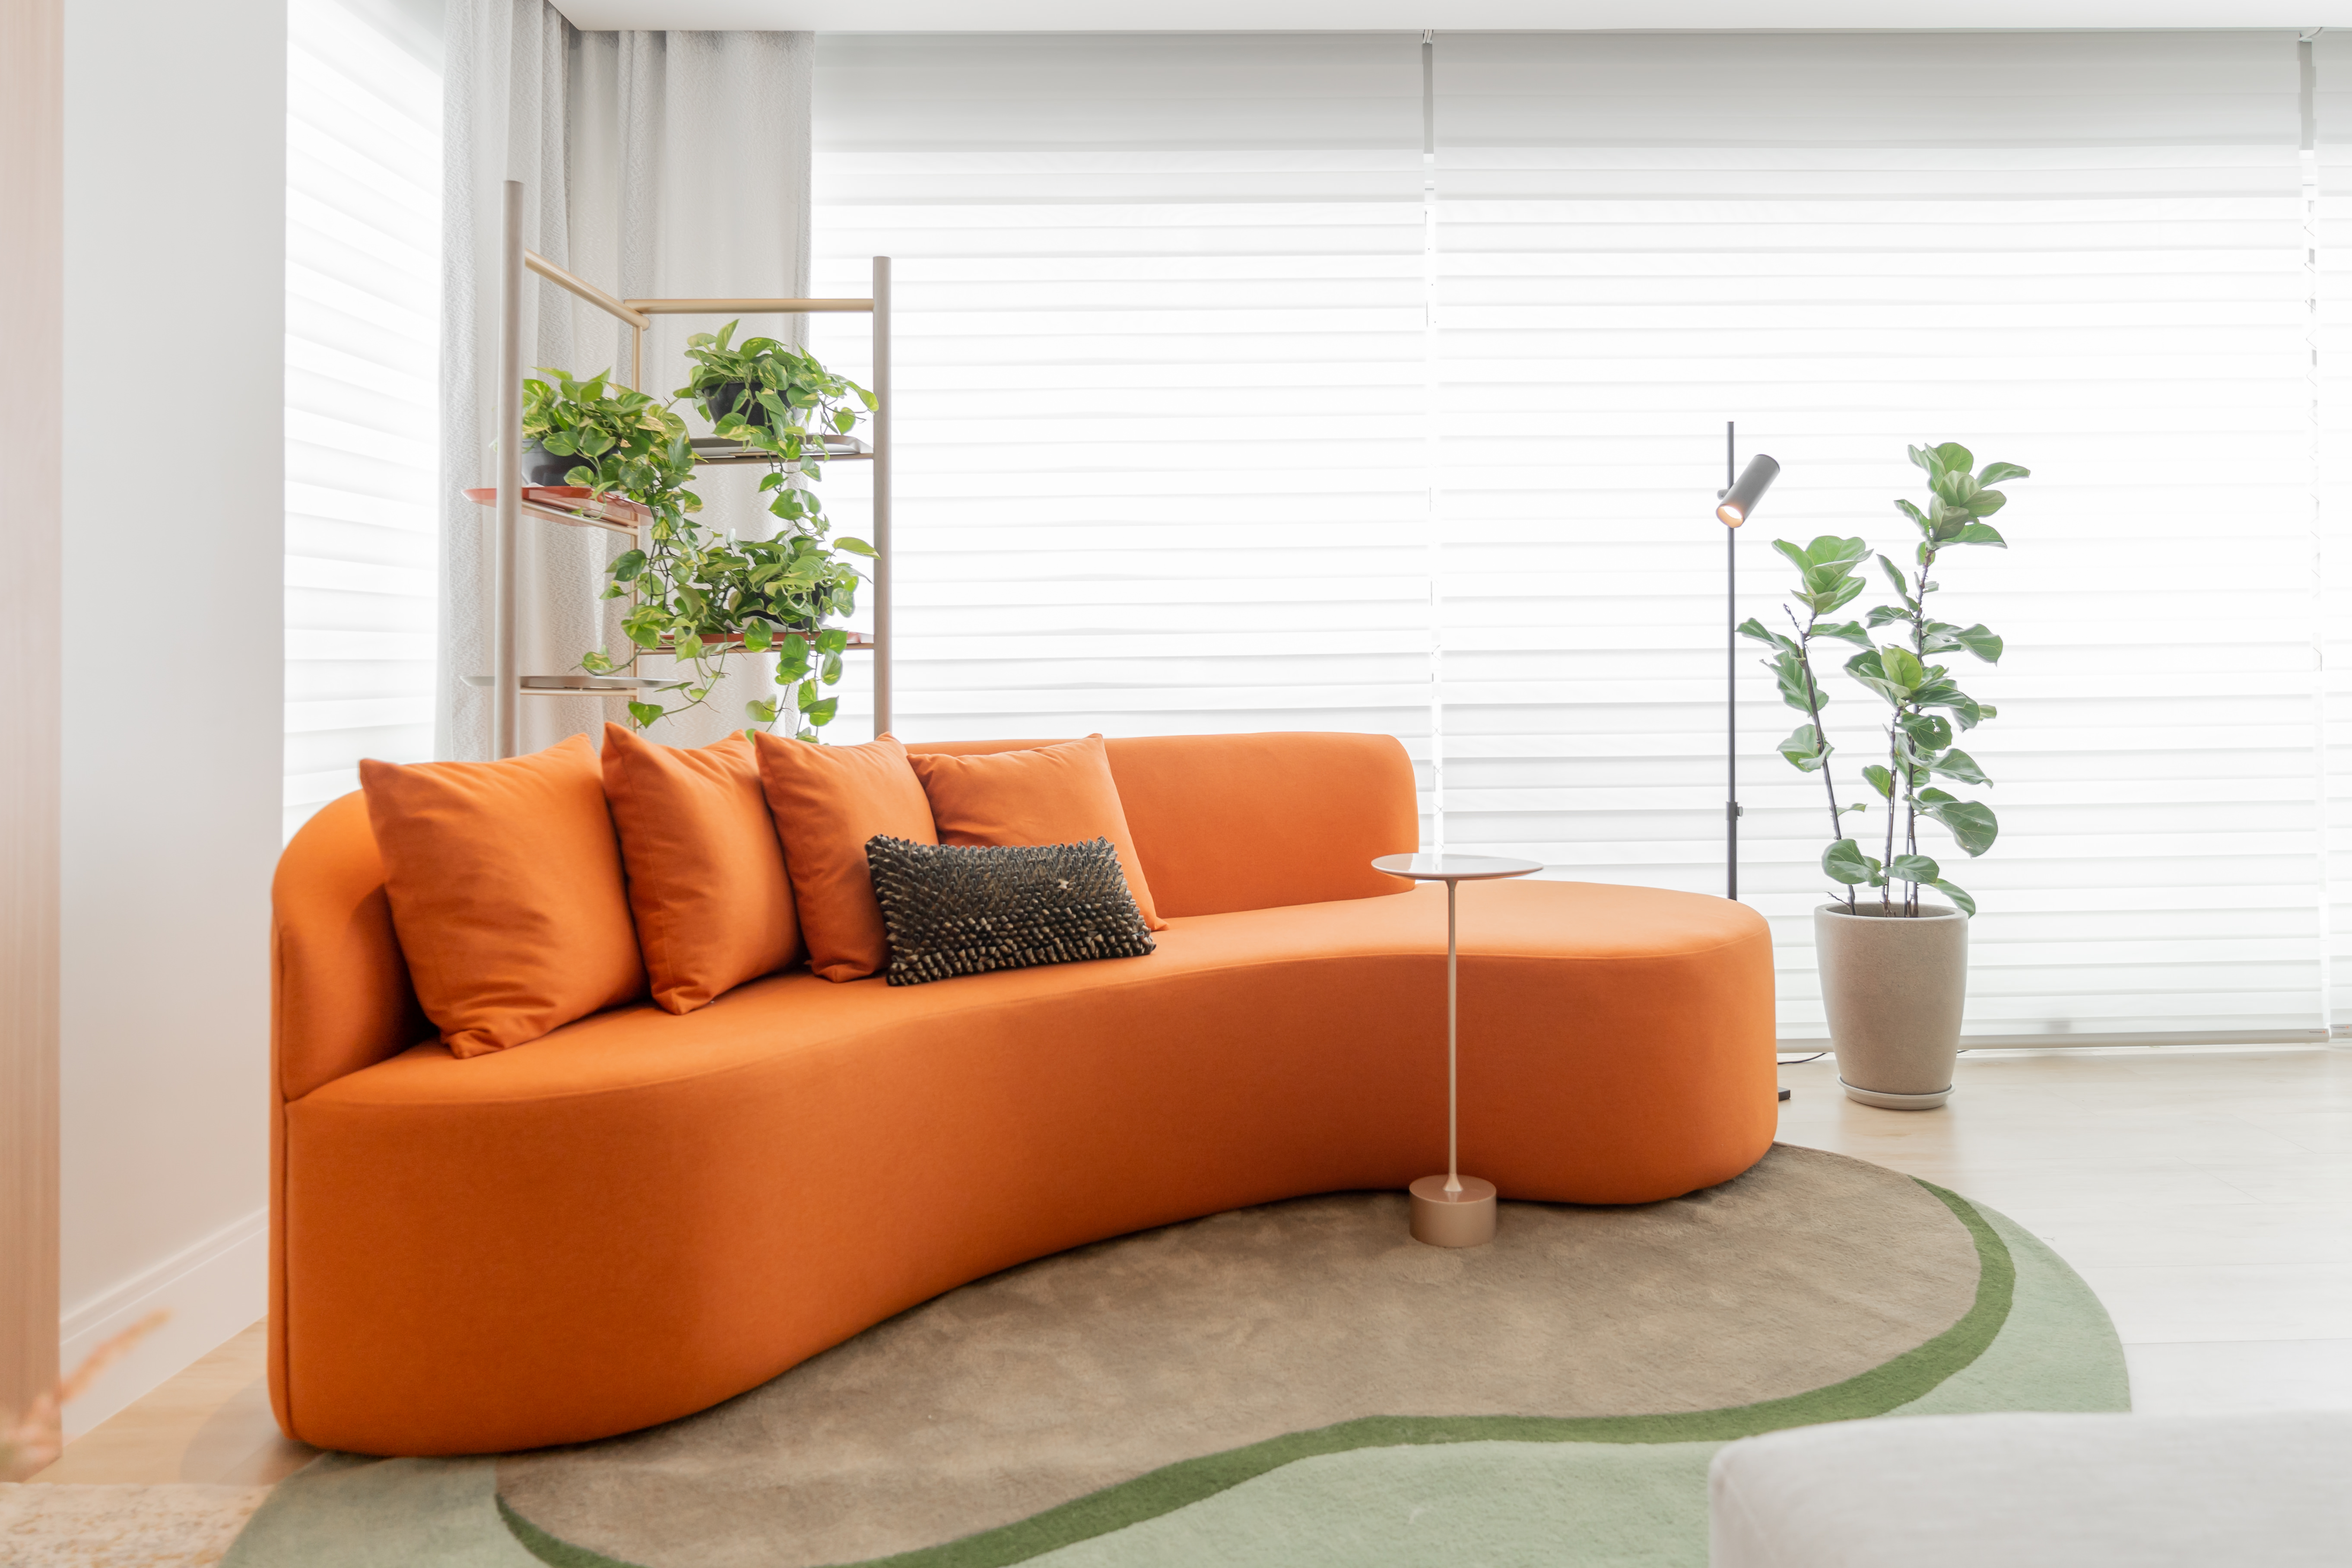 Móveis coloridos e mix de revestimentos dão o tom do décor neste apê. Projeto de Romário Rodrigues. Na foto, varanda com sofá curvo laranja e plantas.